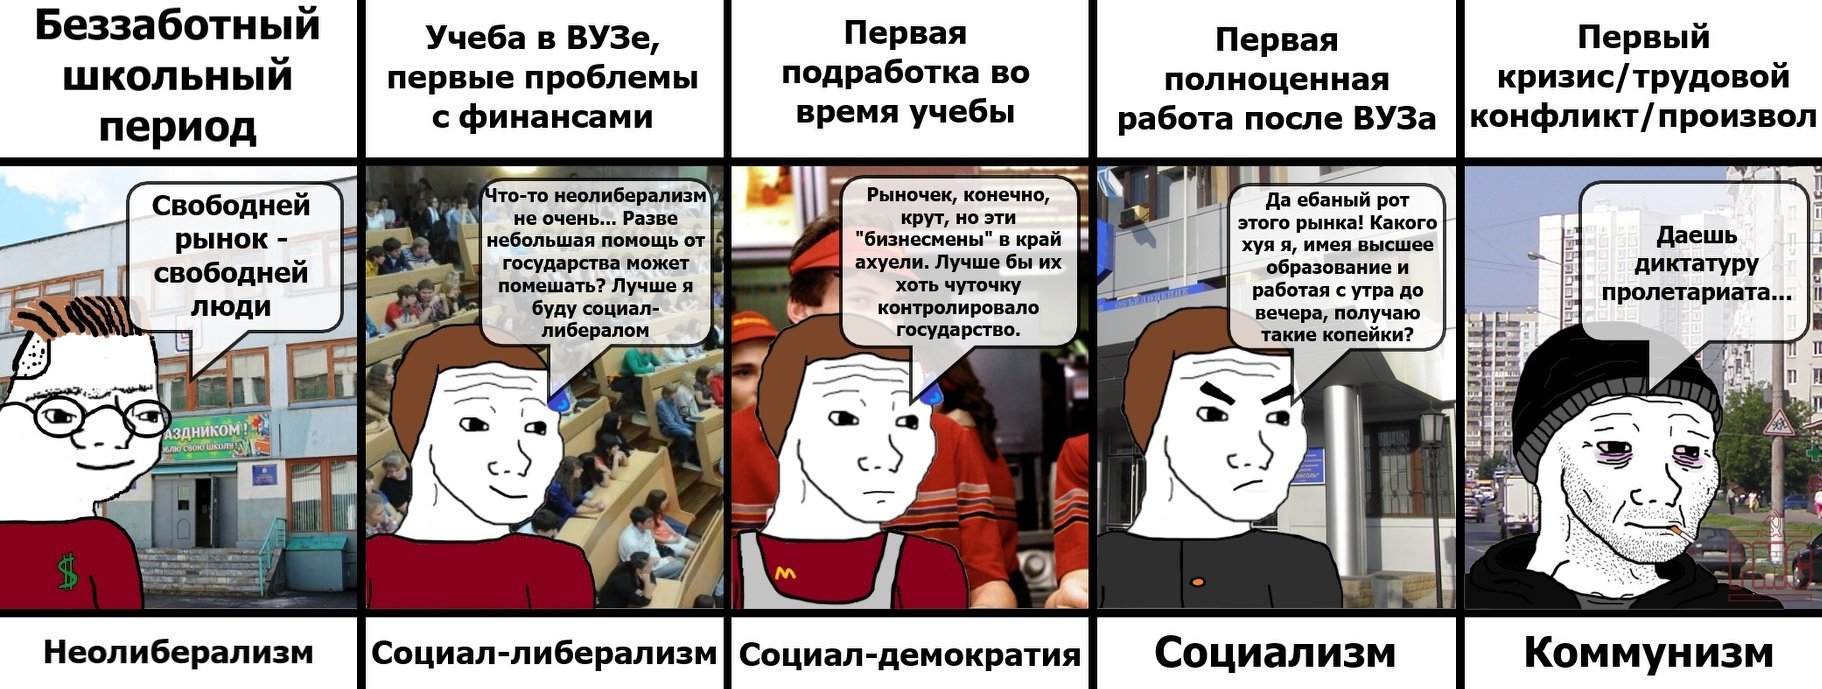 Мемы про коммунизм